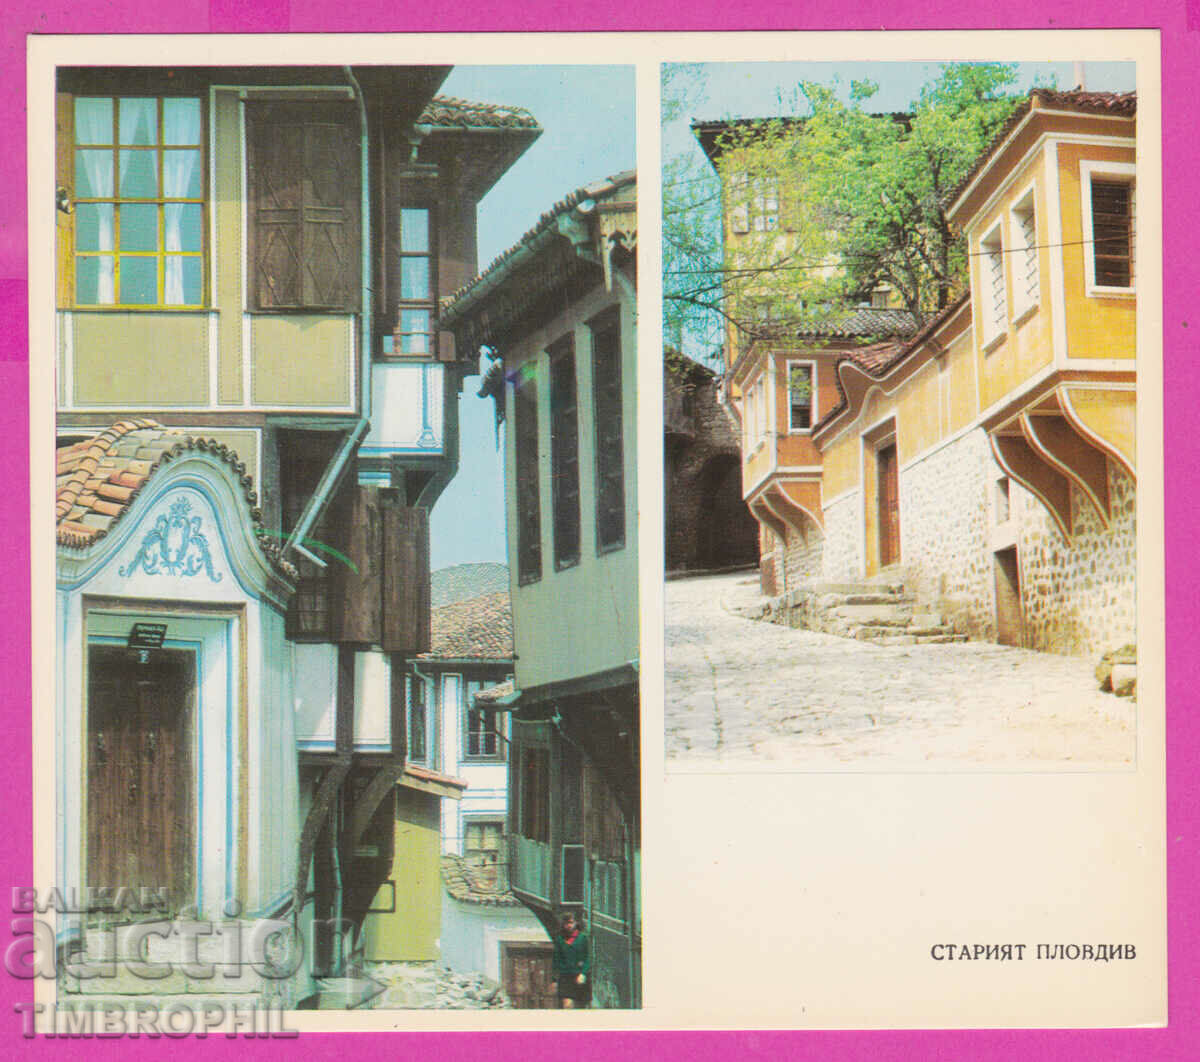 274627 / Plovdiv - orașul vechi - carte poștală Bulgaria